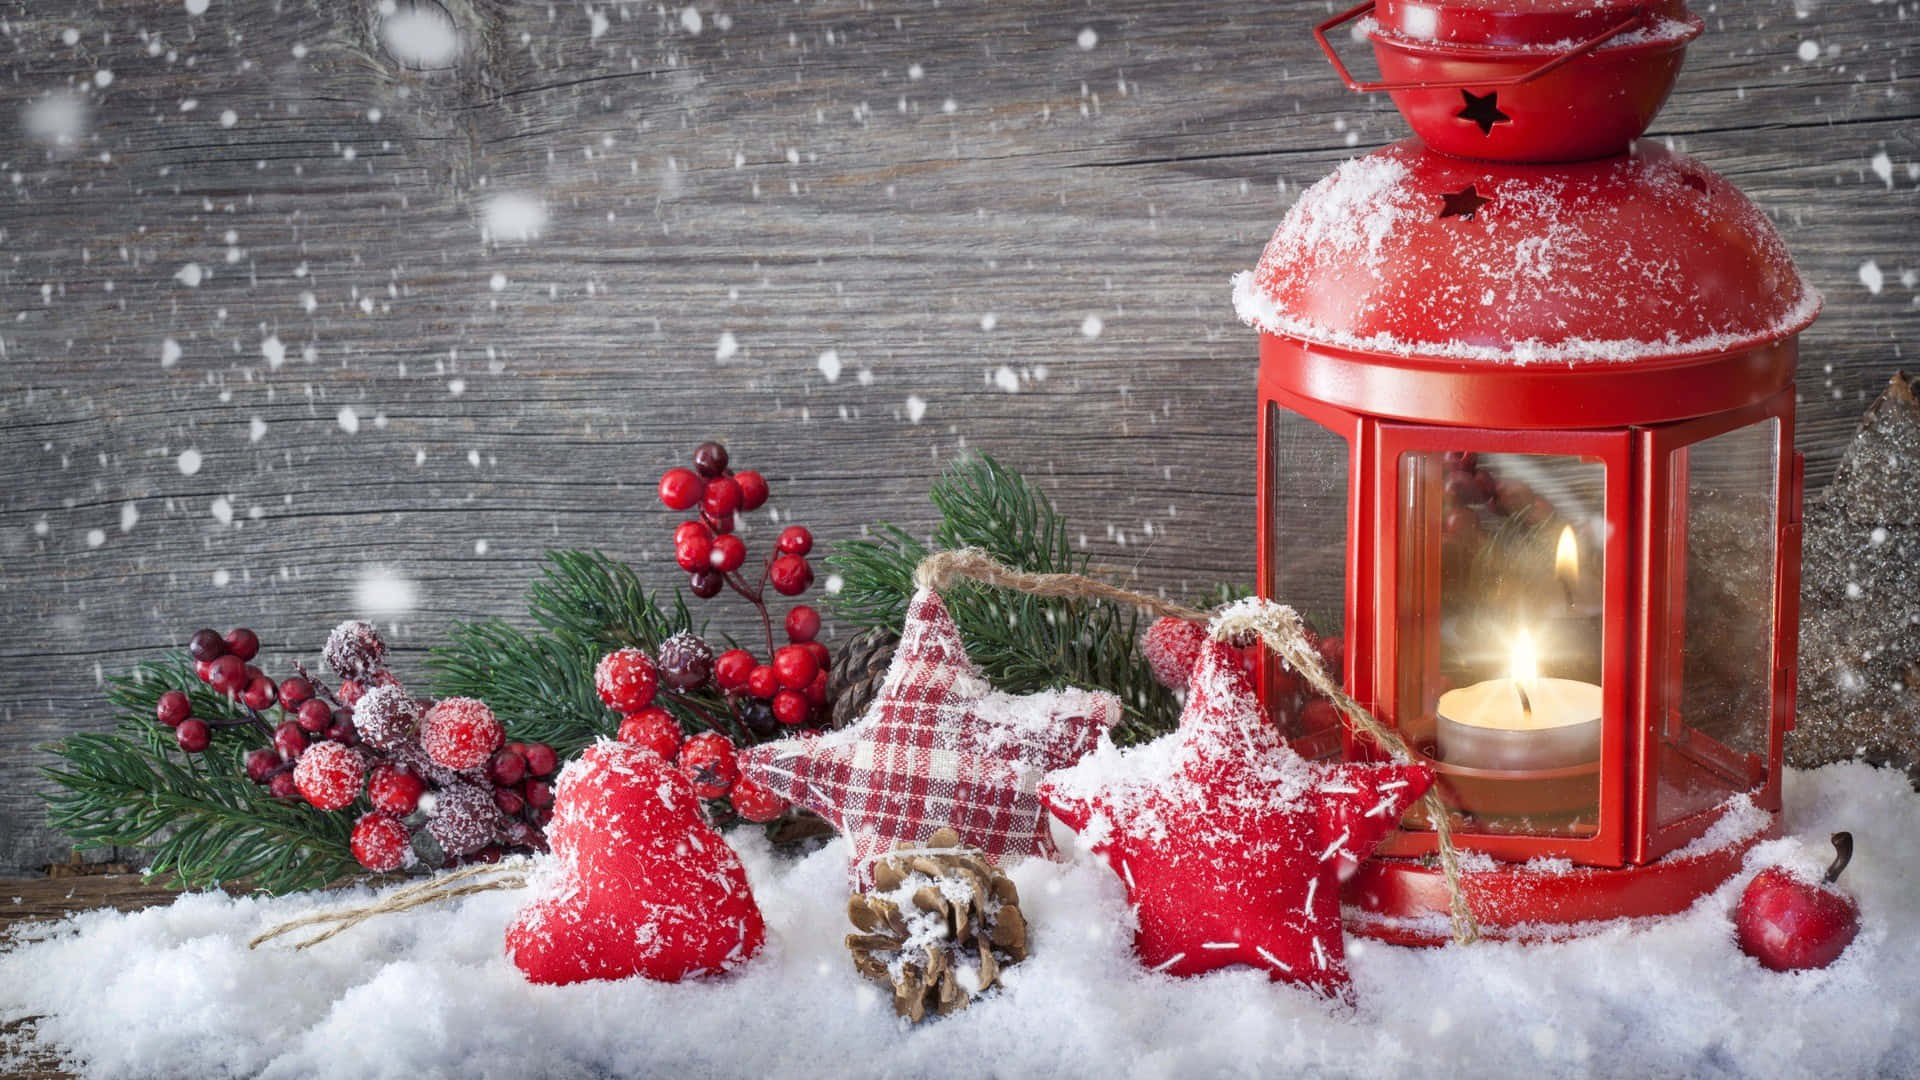 Spüredie Wärme Der Weihnachtszeit Mit Diesem Festlichen Hintergrundbild Für Deinen Desktop!